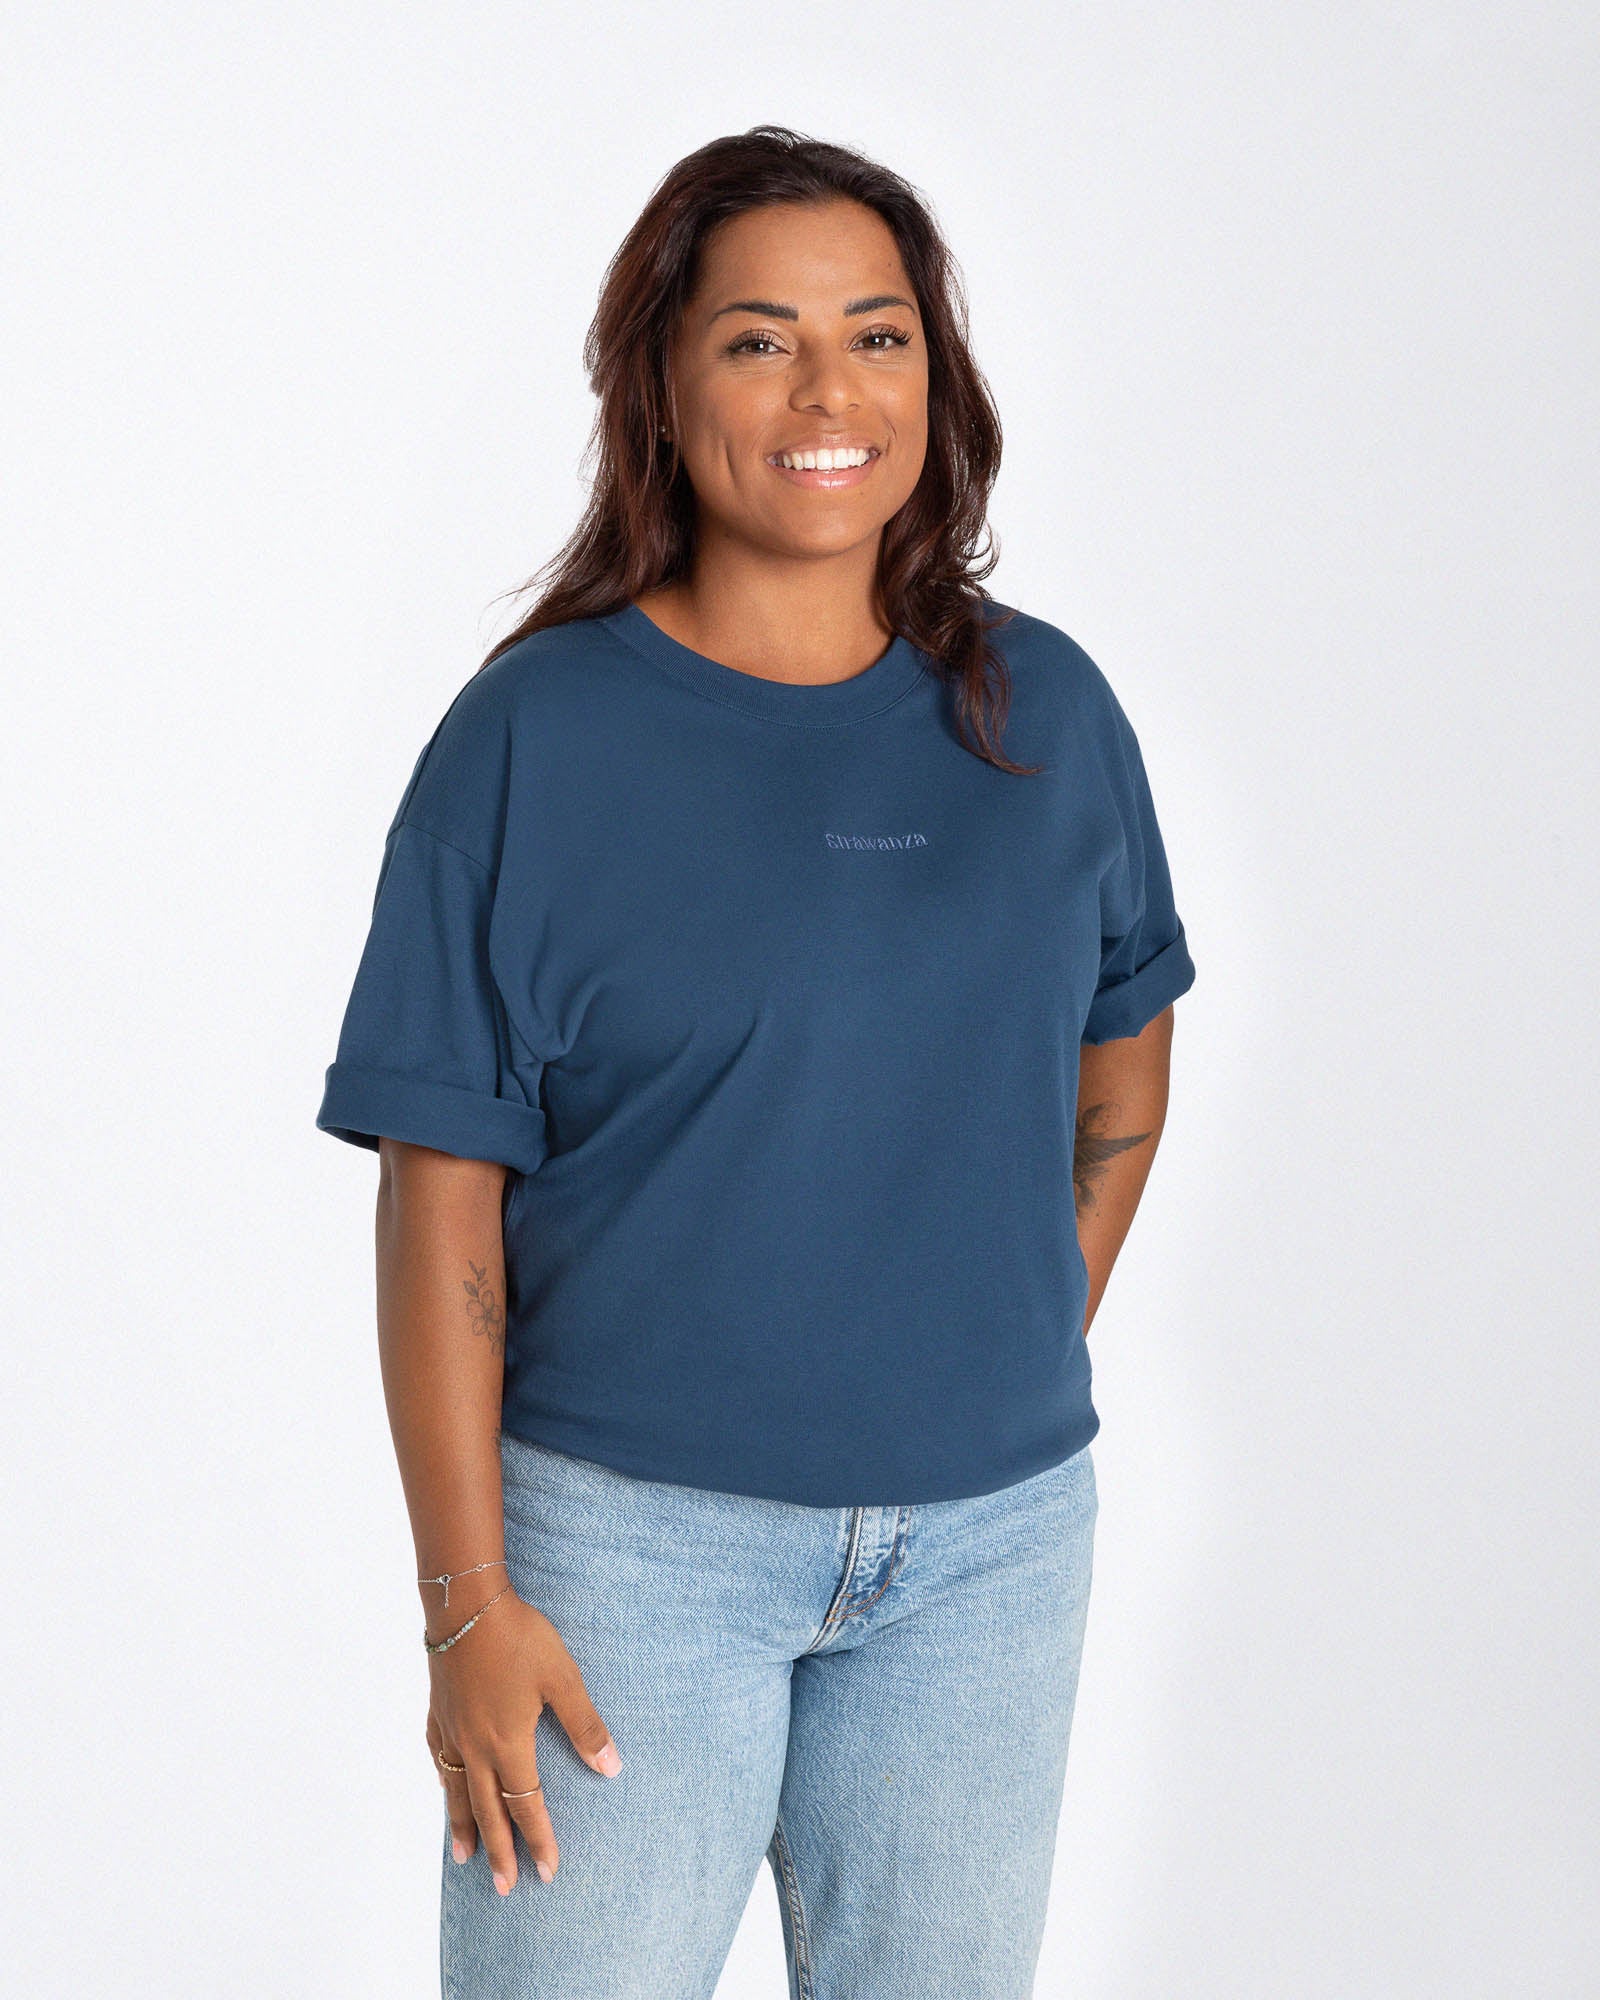 Weibliches Model trägt ein blaues T-Shirt mit einem in Ton in Ton gesticktem "Strawanza" inmitten der Brust. 